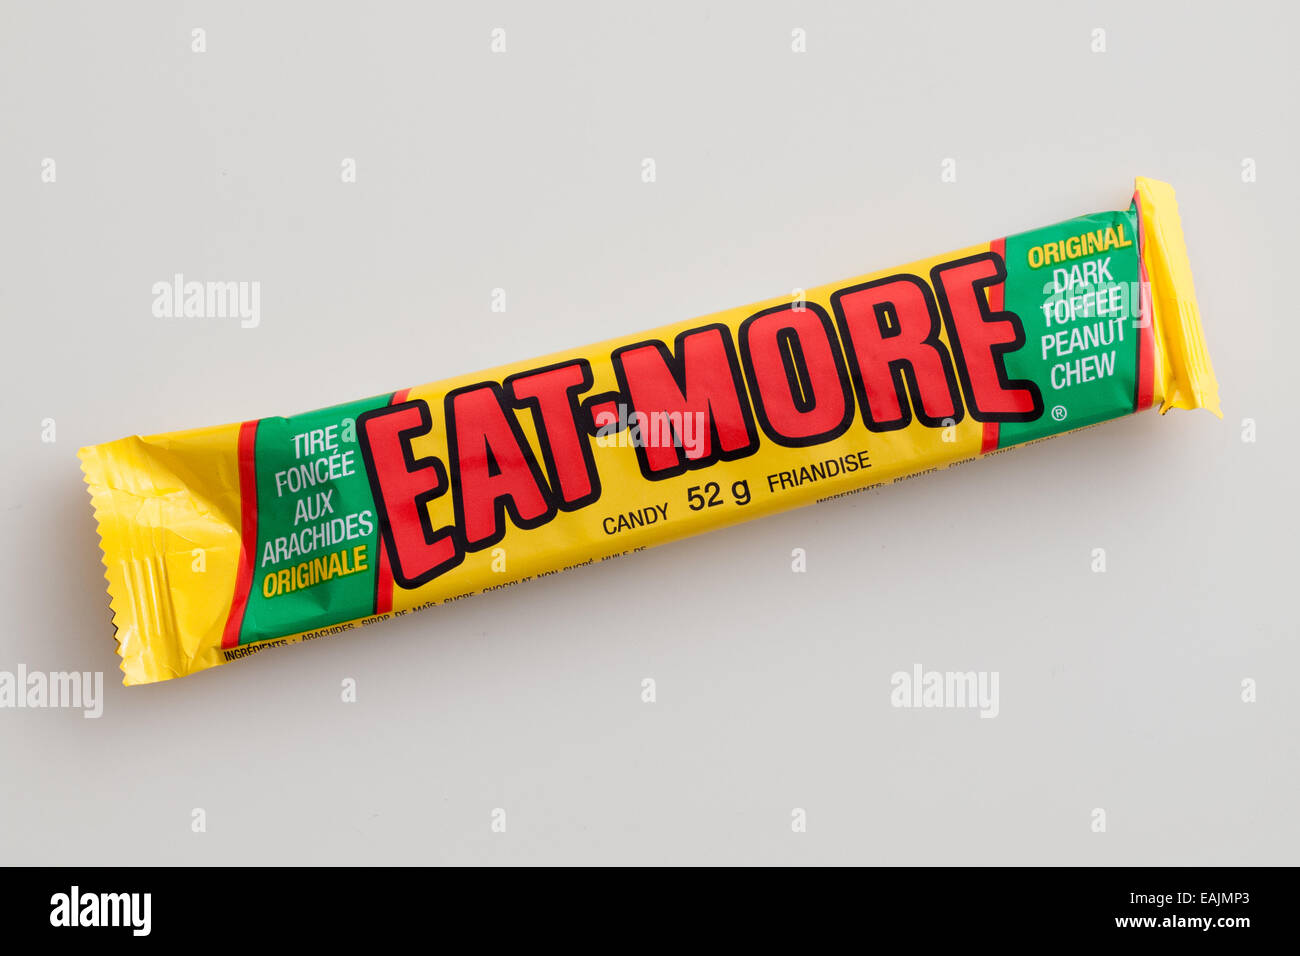 Una barra de caramelo Eat-More, realizados por la empresa Hershey. Foto de stock